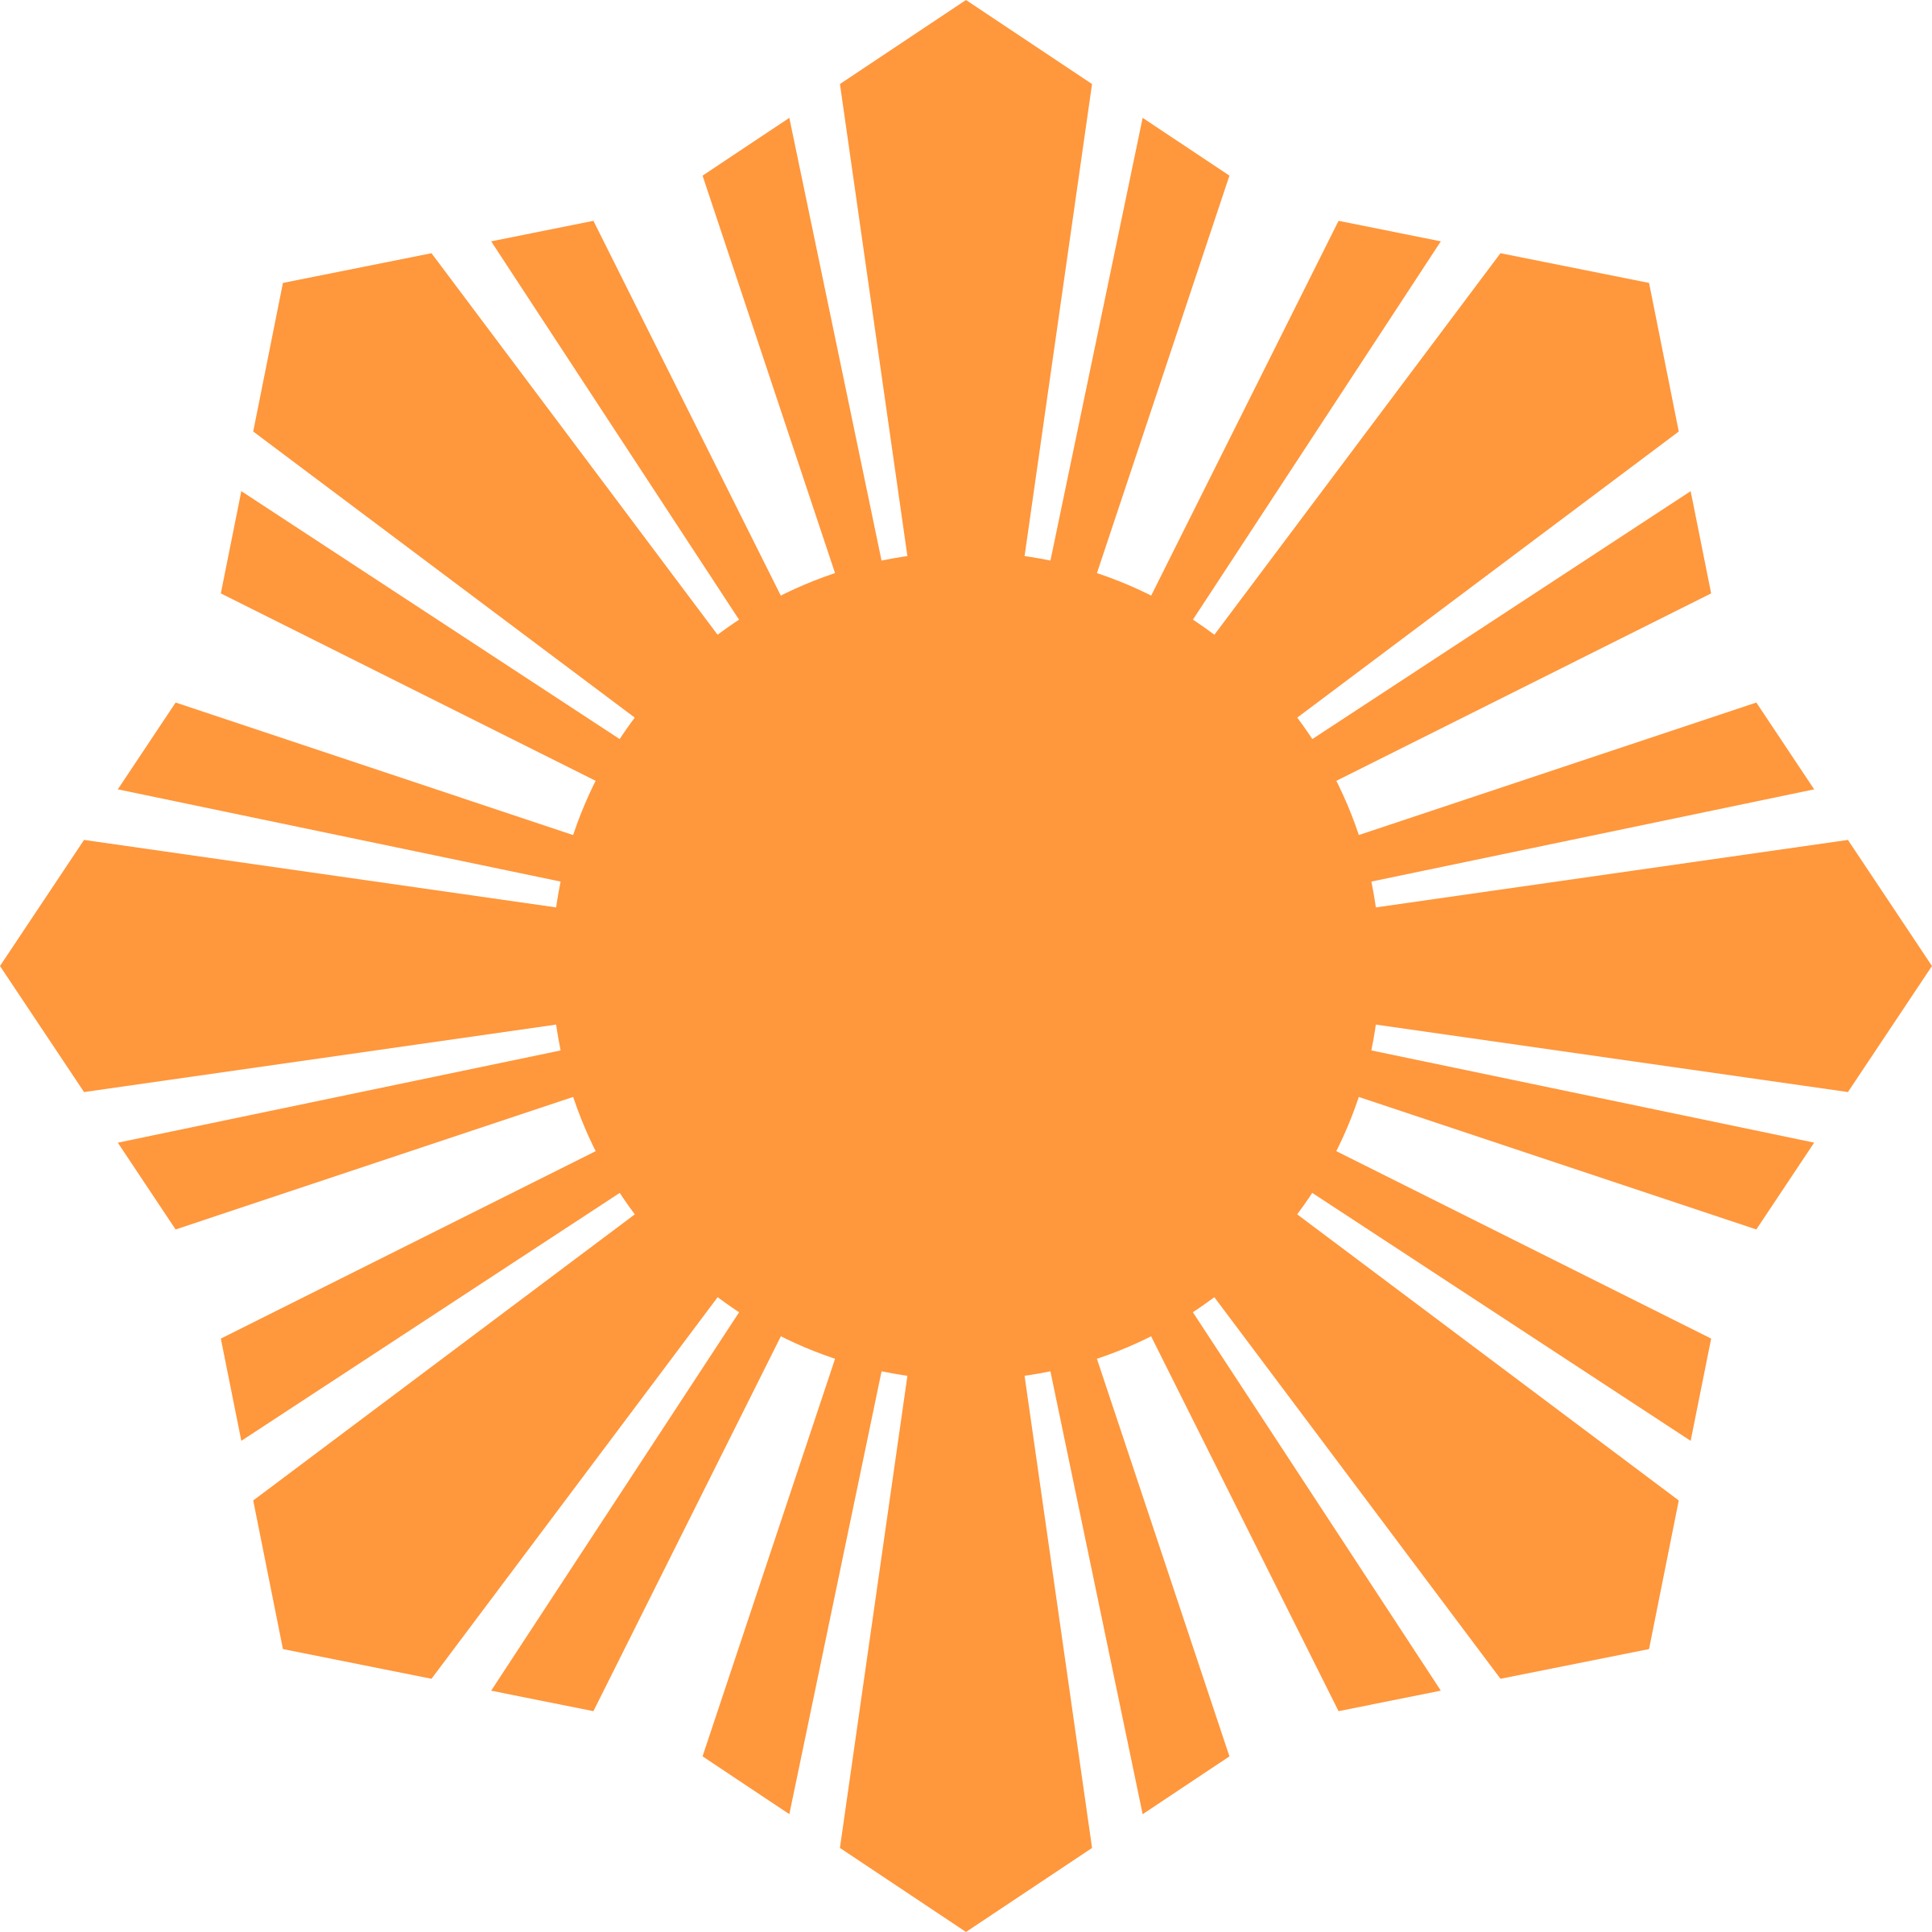 Clipart - Sun Symbol Orange